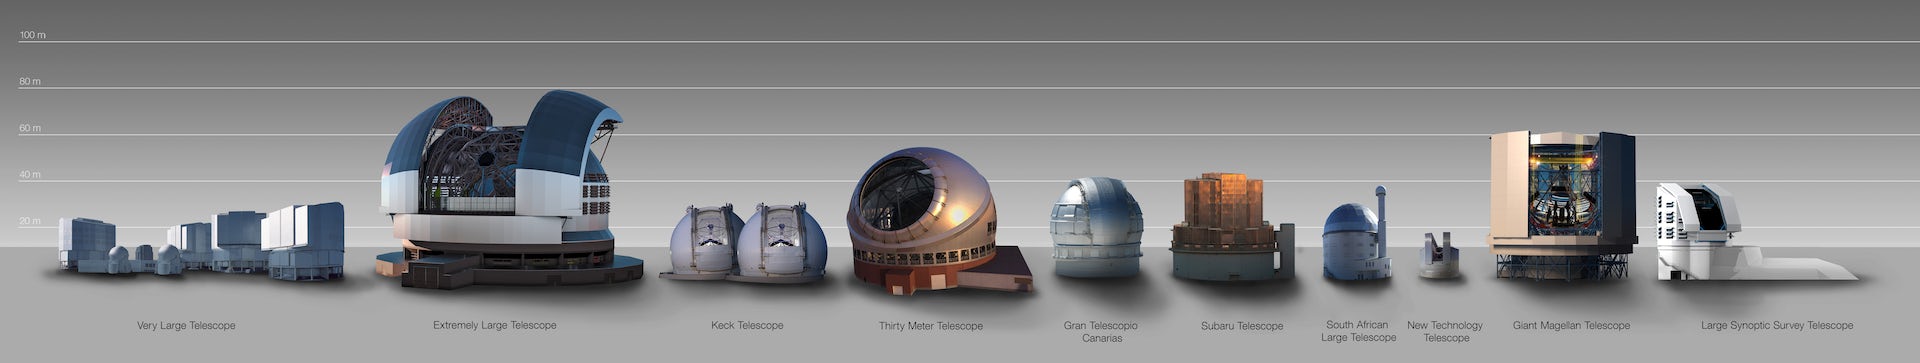 Сравнение размеров ELT и других куполов телескопа.